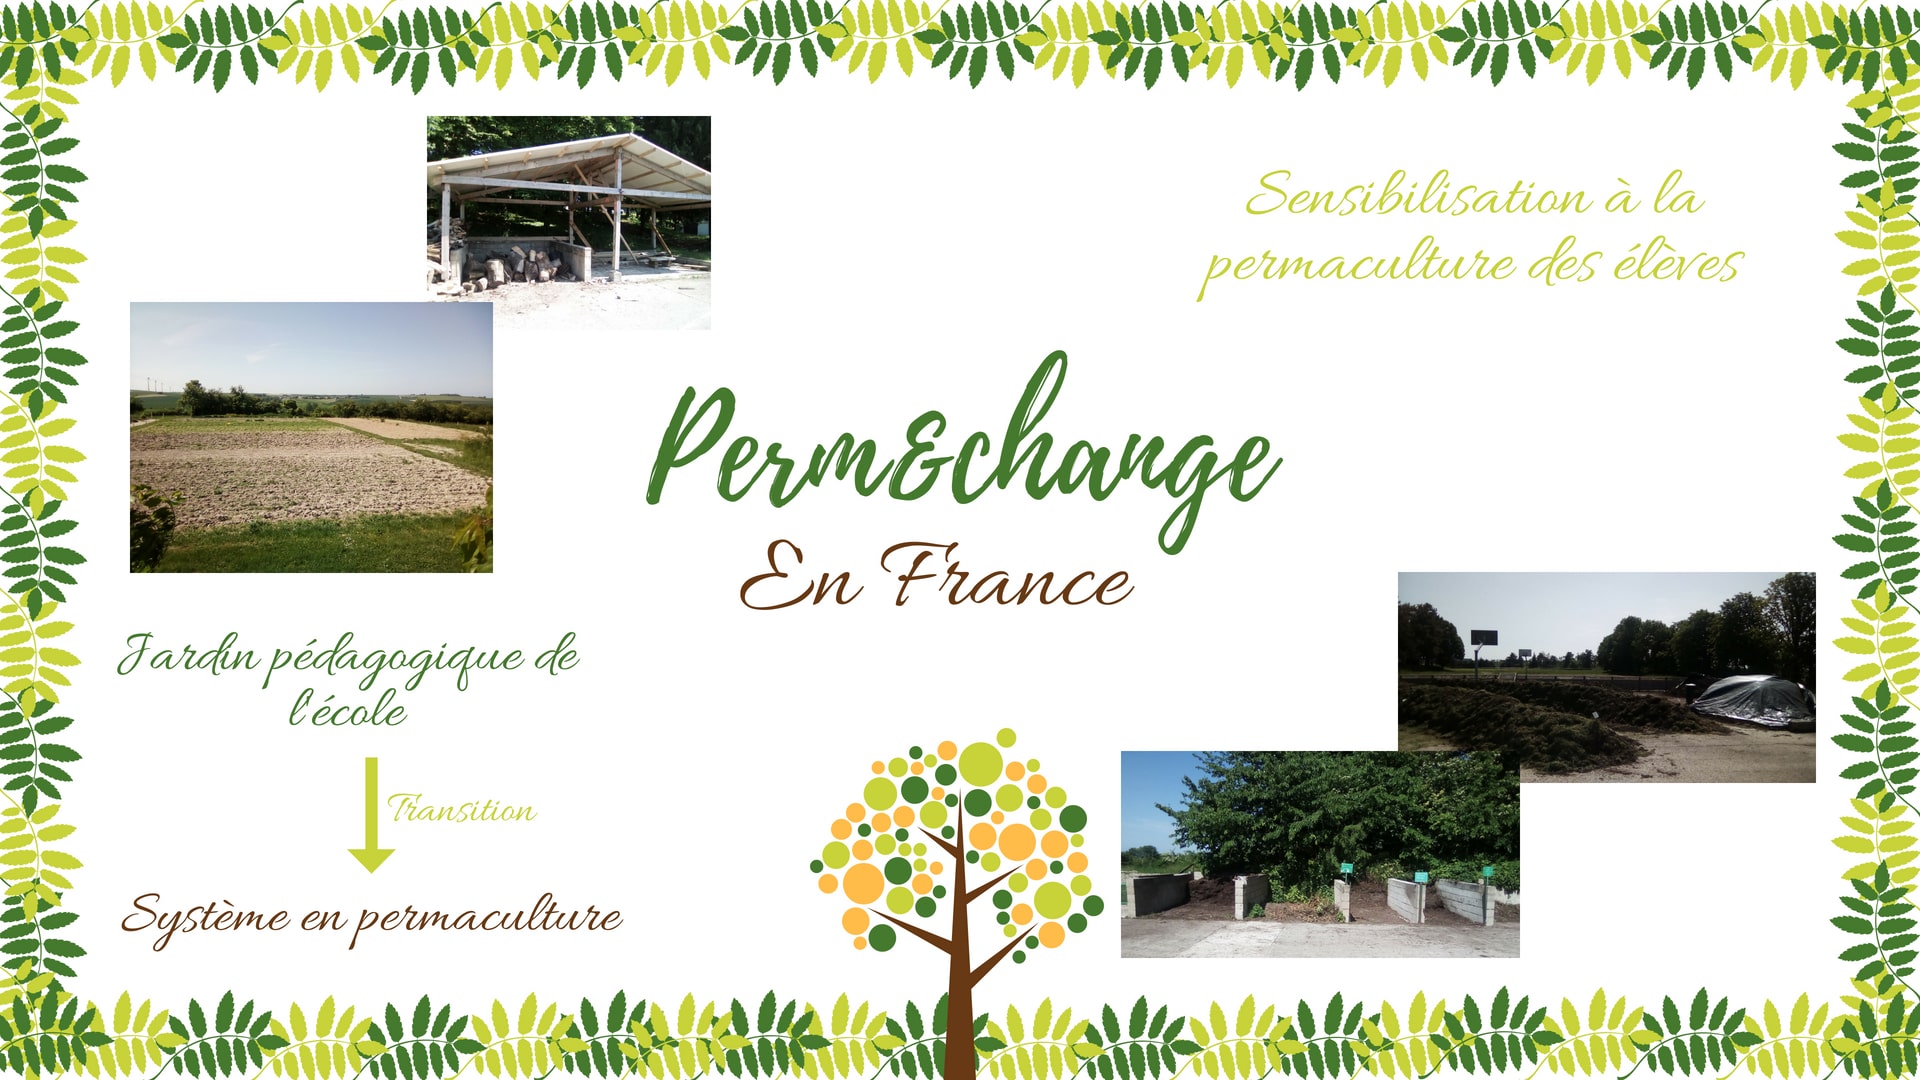 Actions en France: transition du jardin pedagogique vers de la permaculture, sensibilisation et formation des eleves a la permaculture